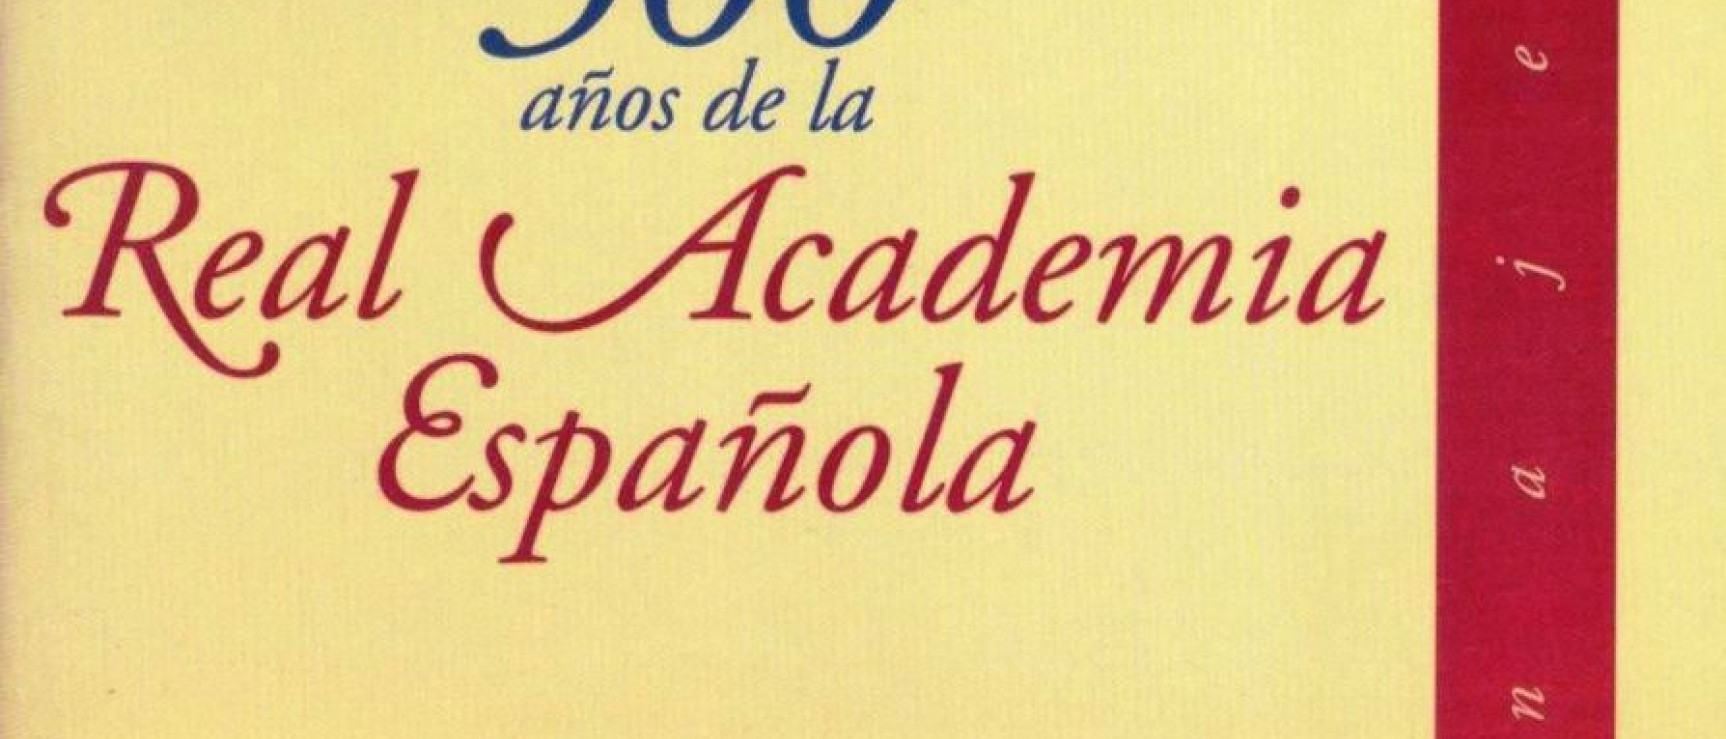 Portada de «300 años de la Real Academia Española», homenaje de la Academia Venezolana de la Lengua.